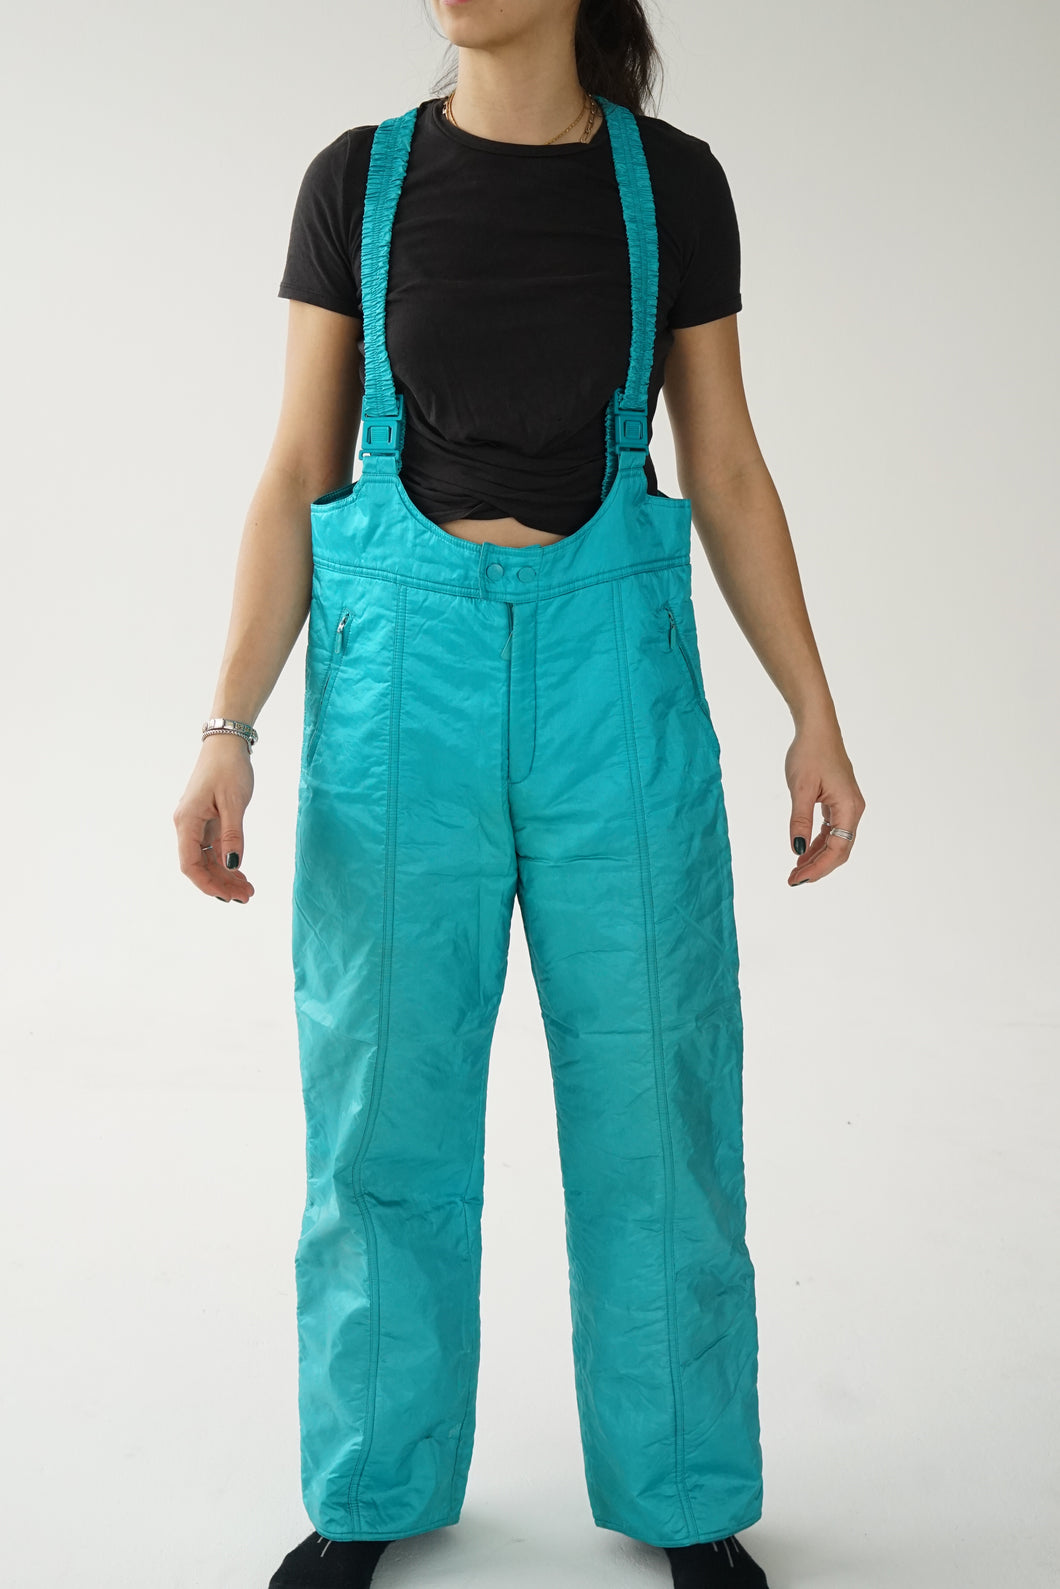 Pantalon de neige salopette Altitude turquoise métallique pour homme taille 42 (M)